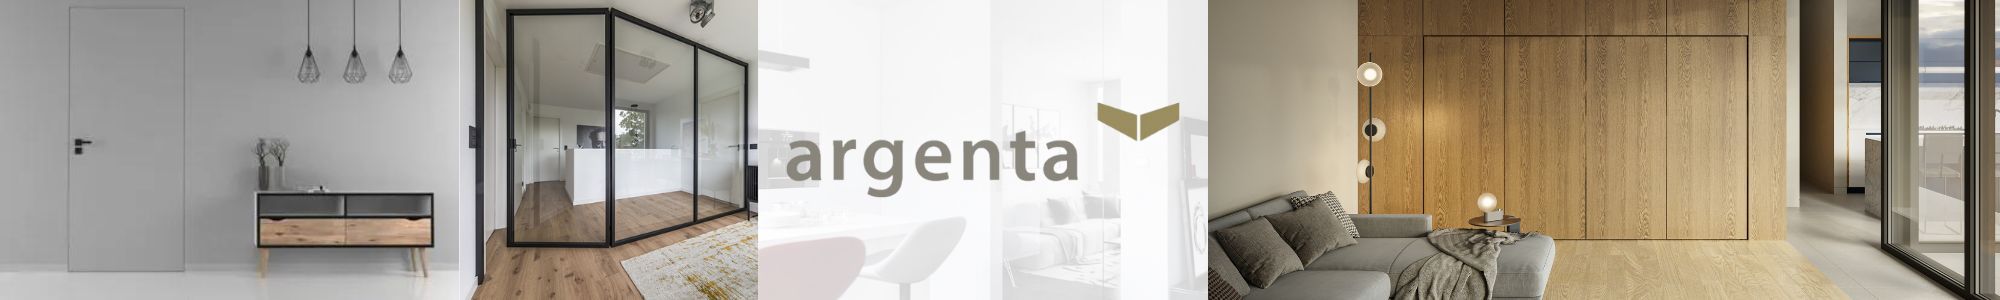 Fermeture magnétique pour porte d'intérieur Magnotica Pro ARGENTA